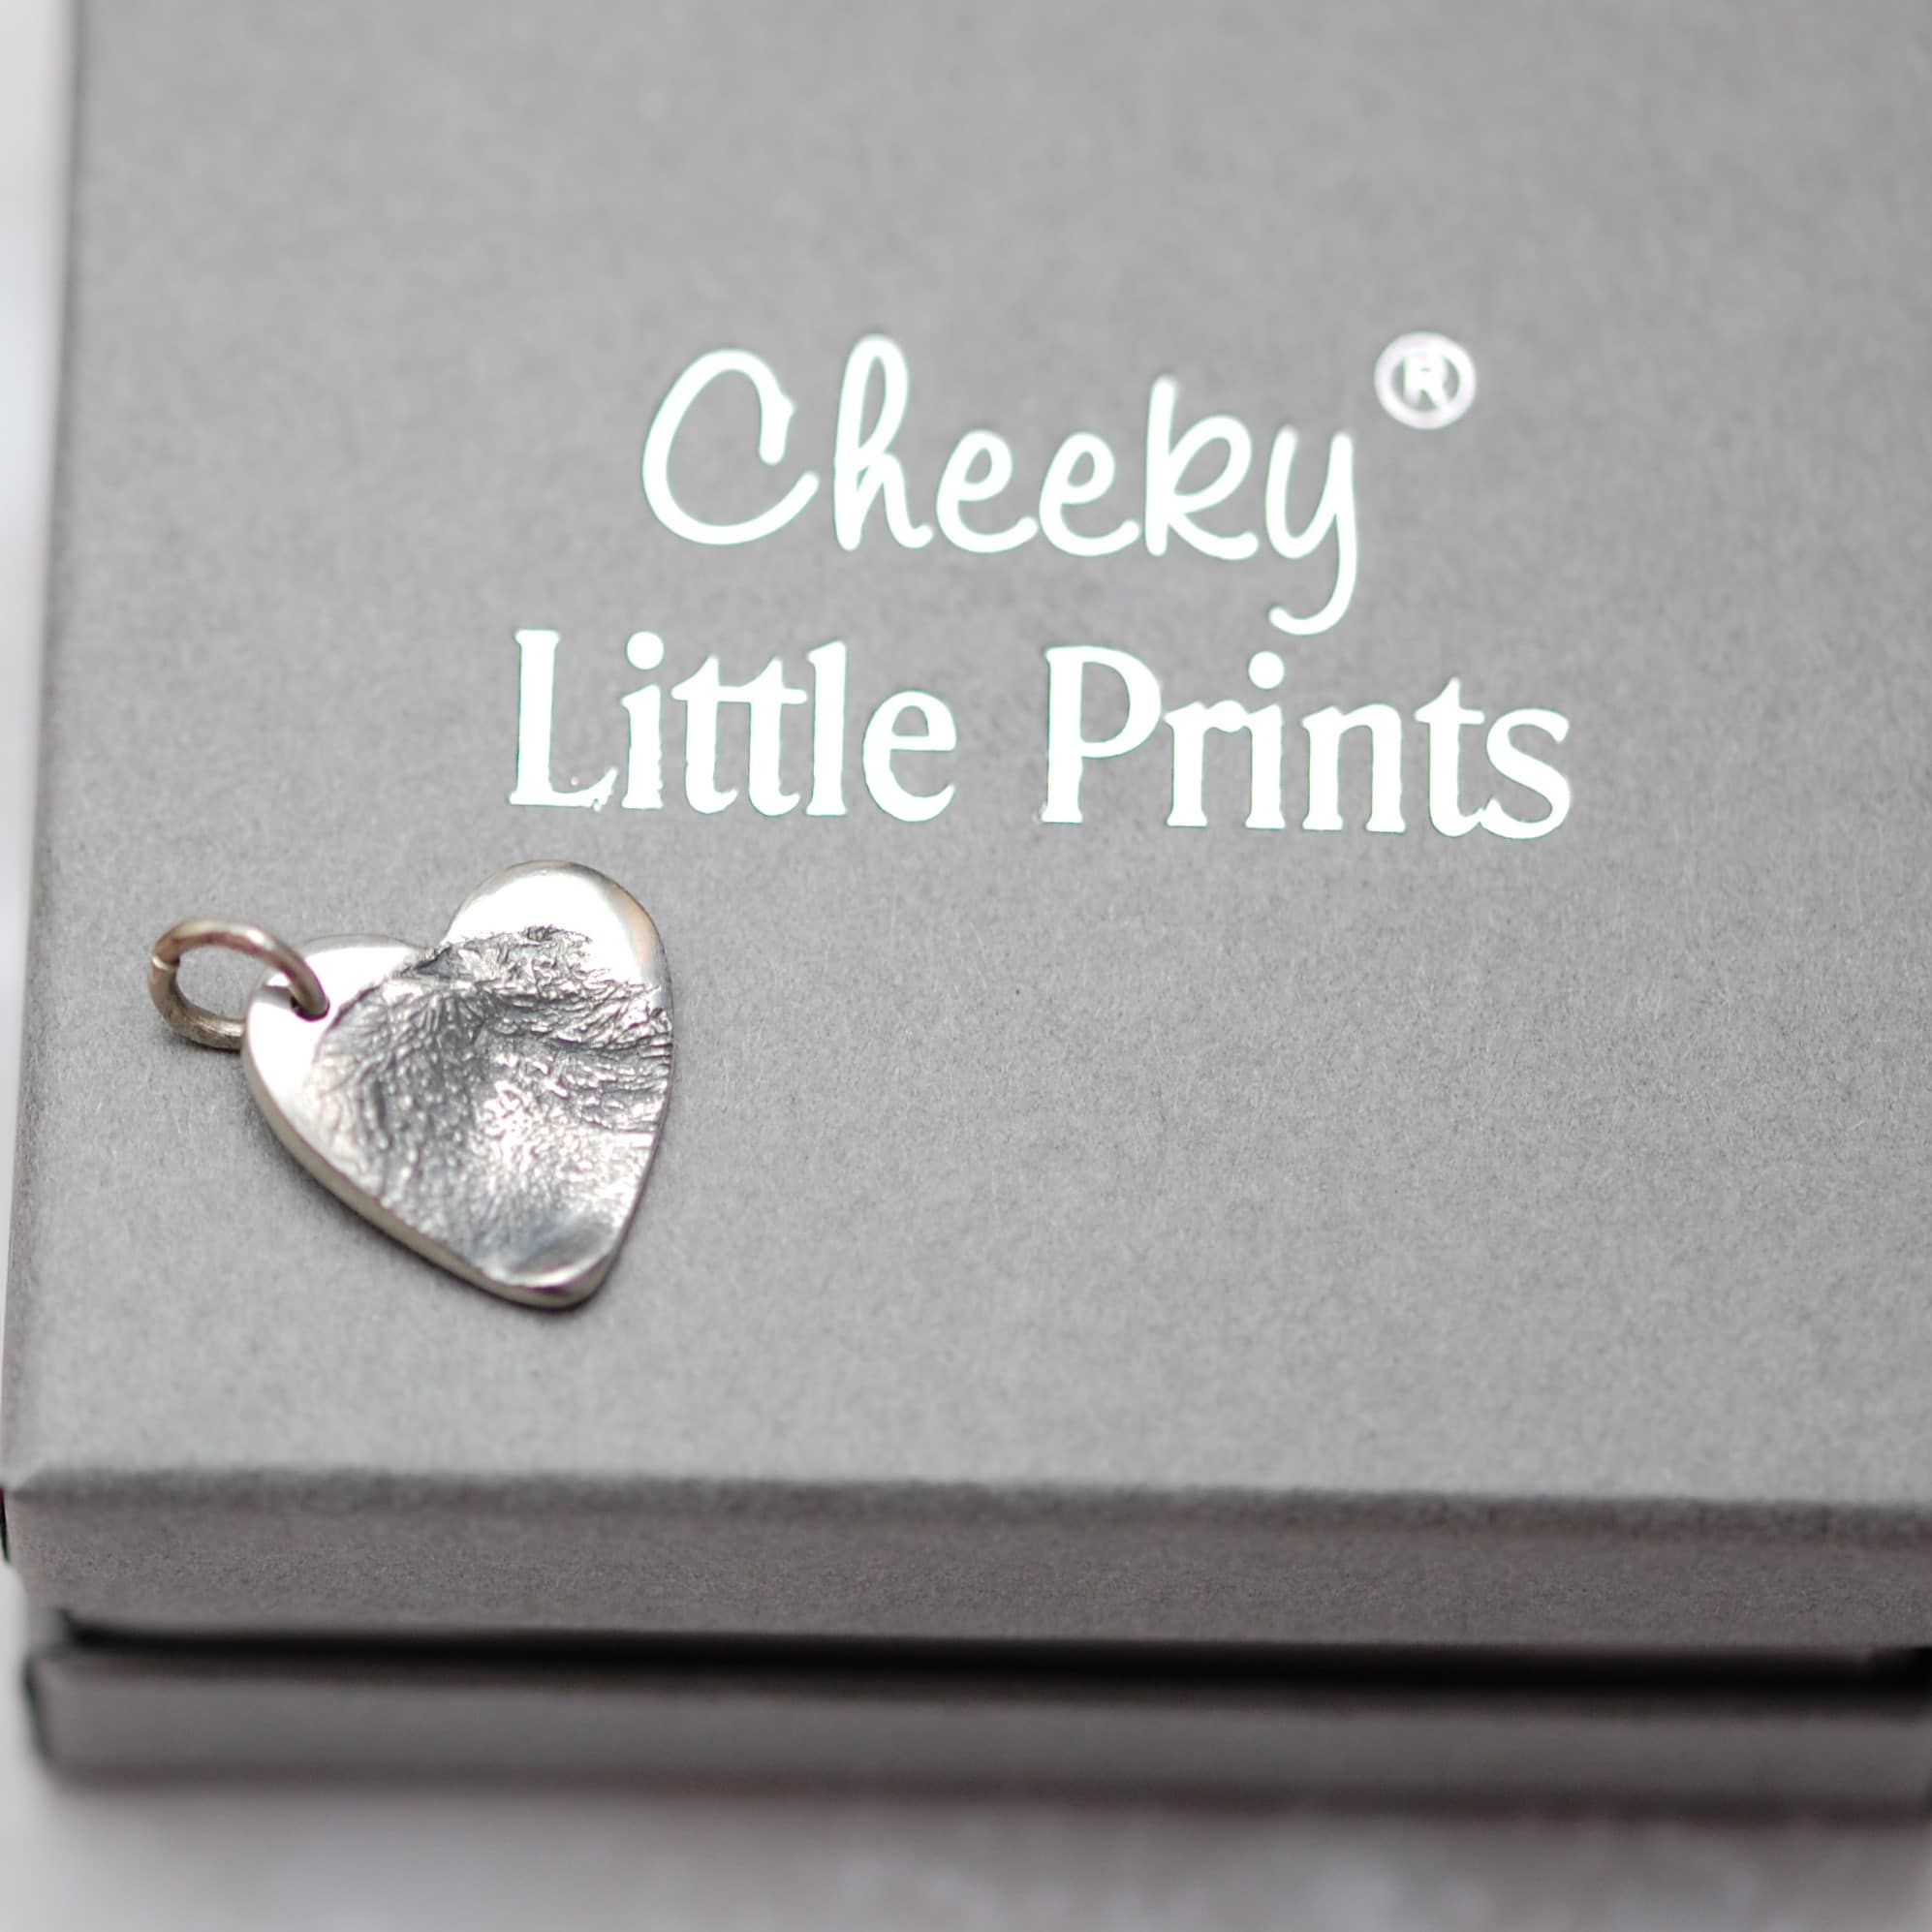 Small silver paw pad print charm